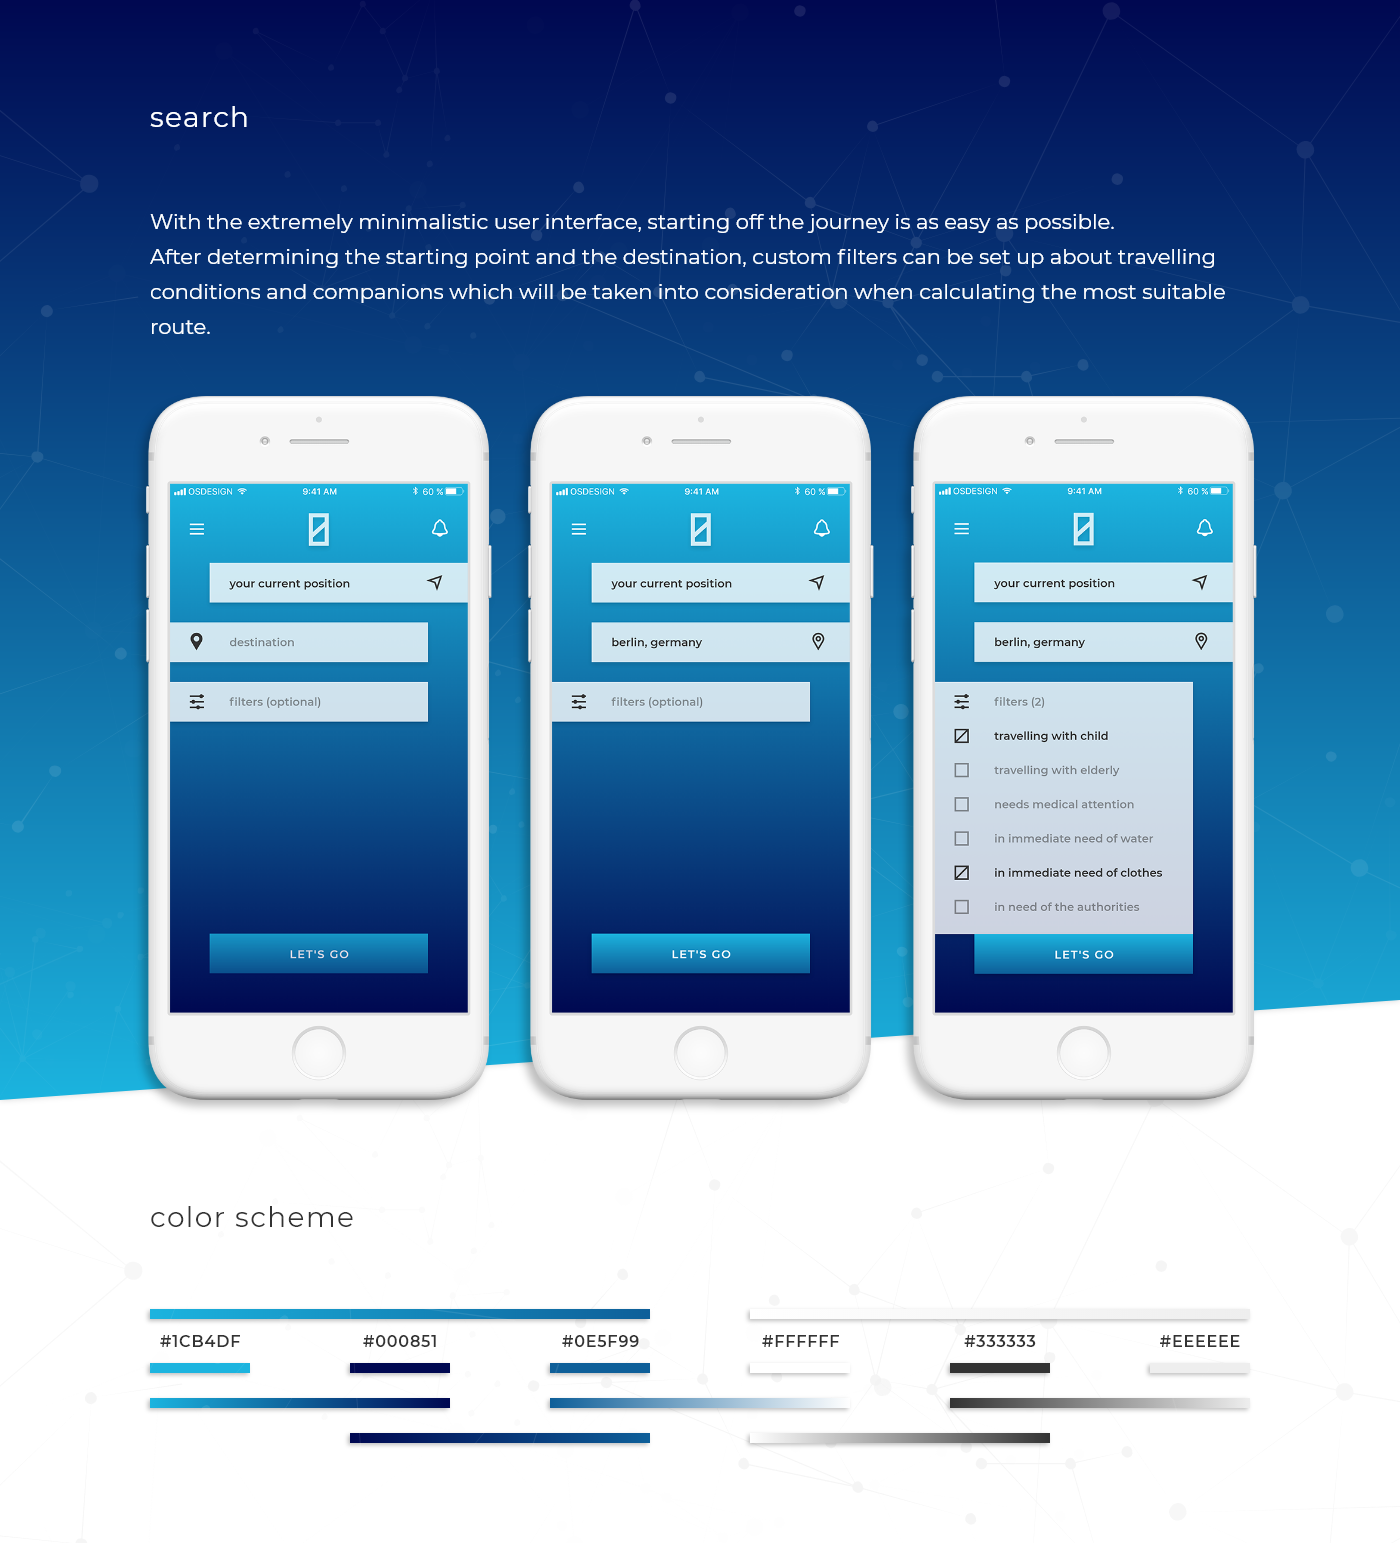 app design free navigation kit download Mockup help new color